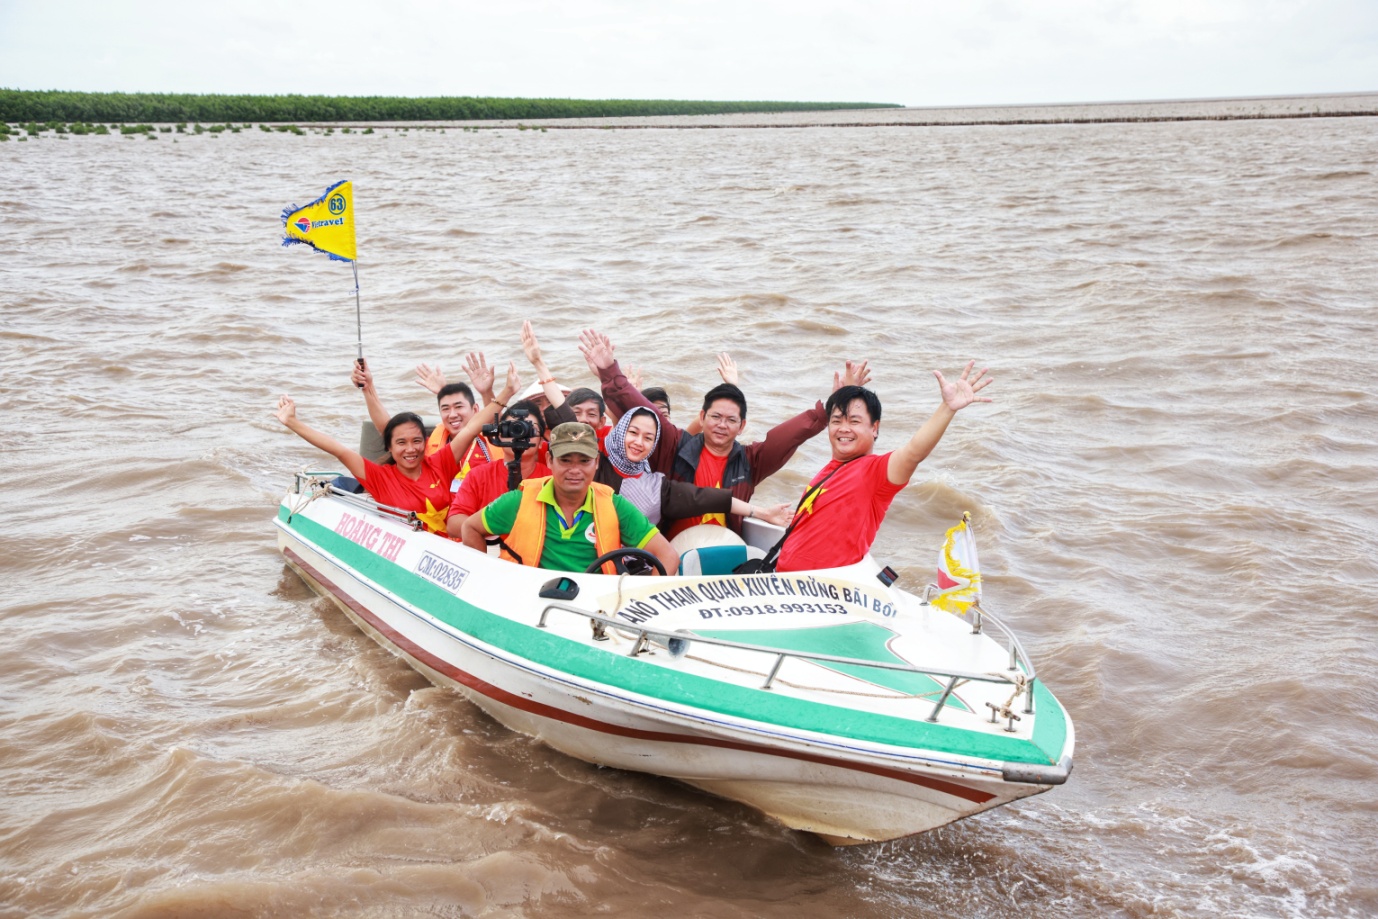 Nối tour liên tỉnh, người Sài Gòn sắp được đi du ngoạn sông nước Cửu Long - 1